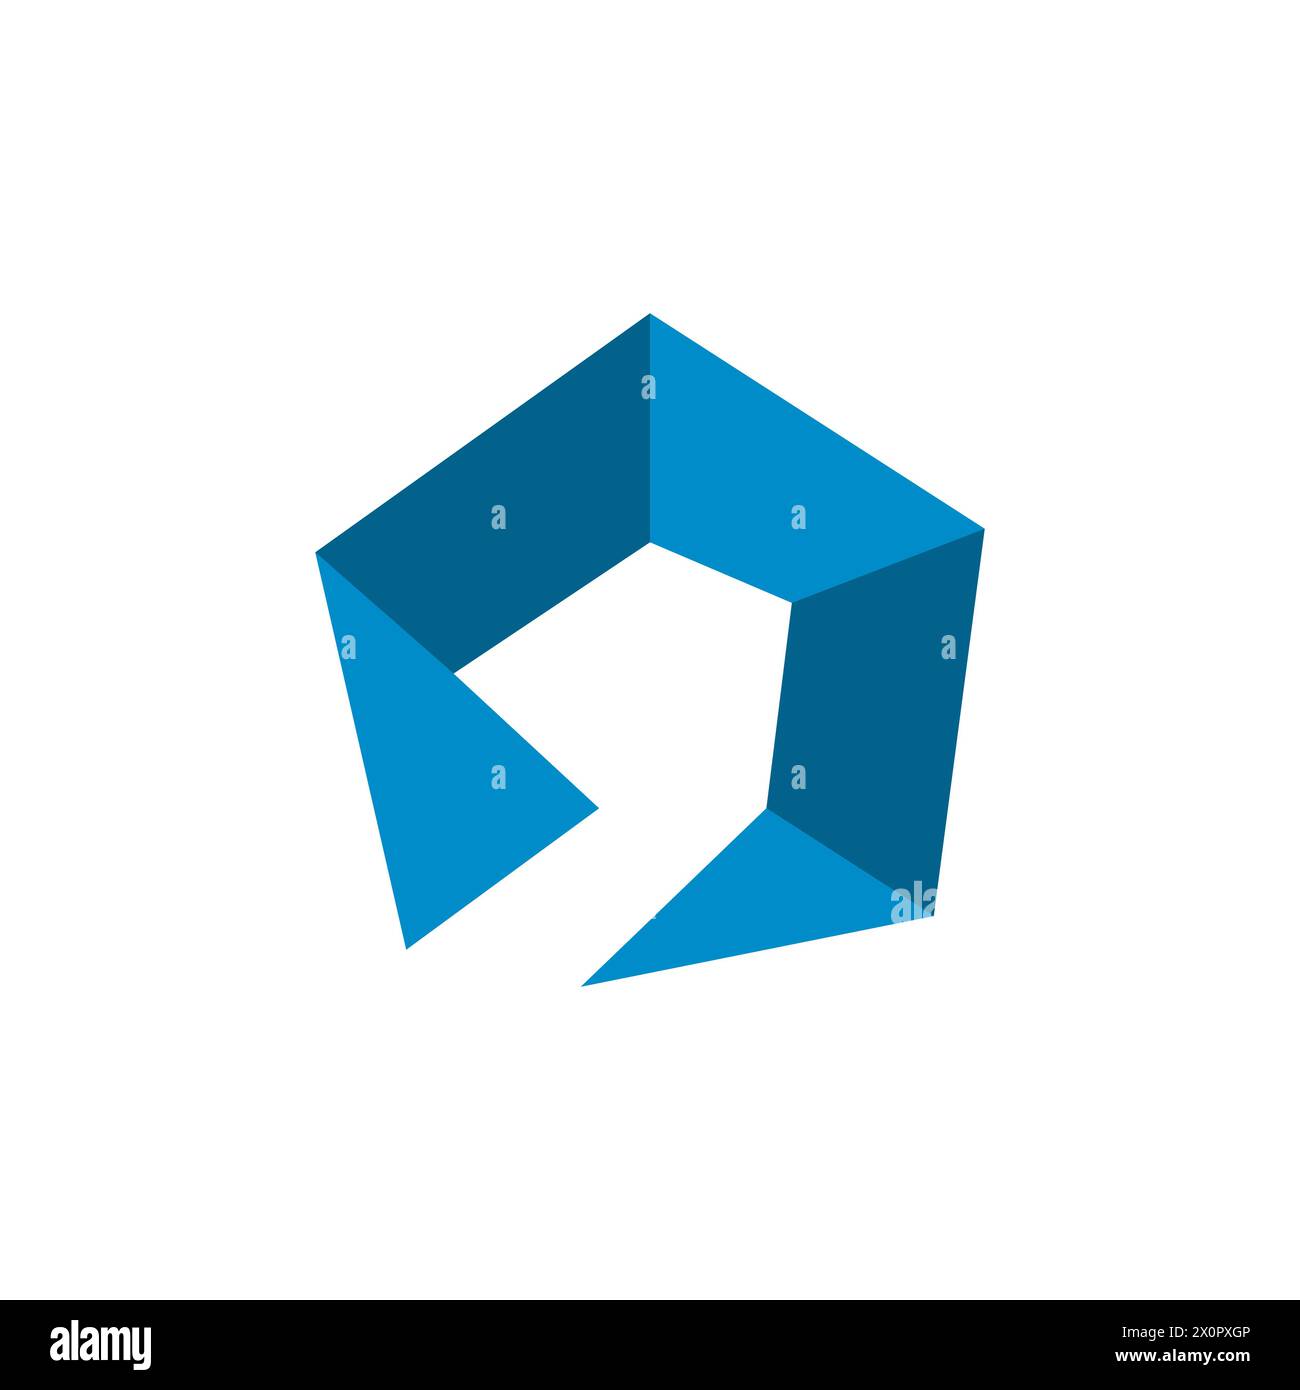 Image vectorielle de conception de logo hexagone abstraite. Cube abstrait Hexagon logo Design illustration vectorielle. Logo vectoriel hexagonal abstrait coloré moderne ou elem Illustration de Vecteur